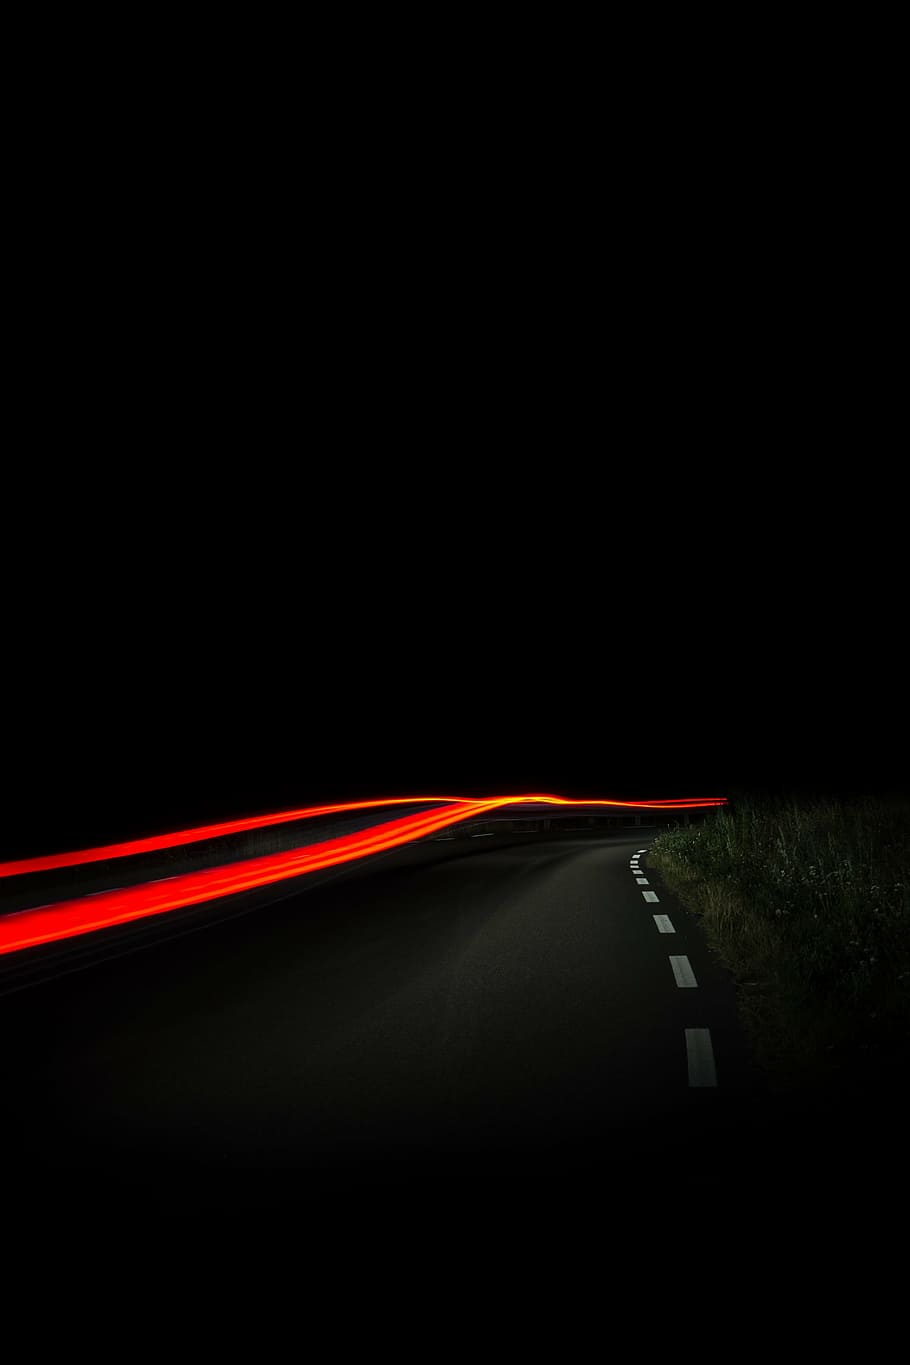 fotografi timelapse, jalan aspal, panjang, pencahayaan, mobil, transportasi, fotografi, pencahayaan panjang, gelap, malam